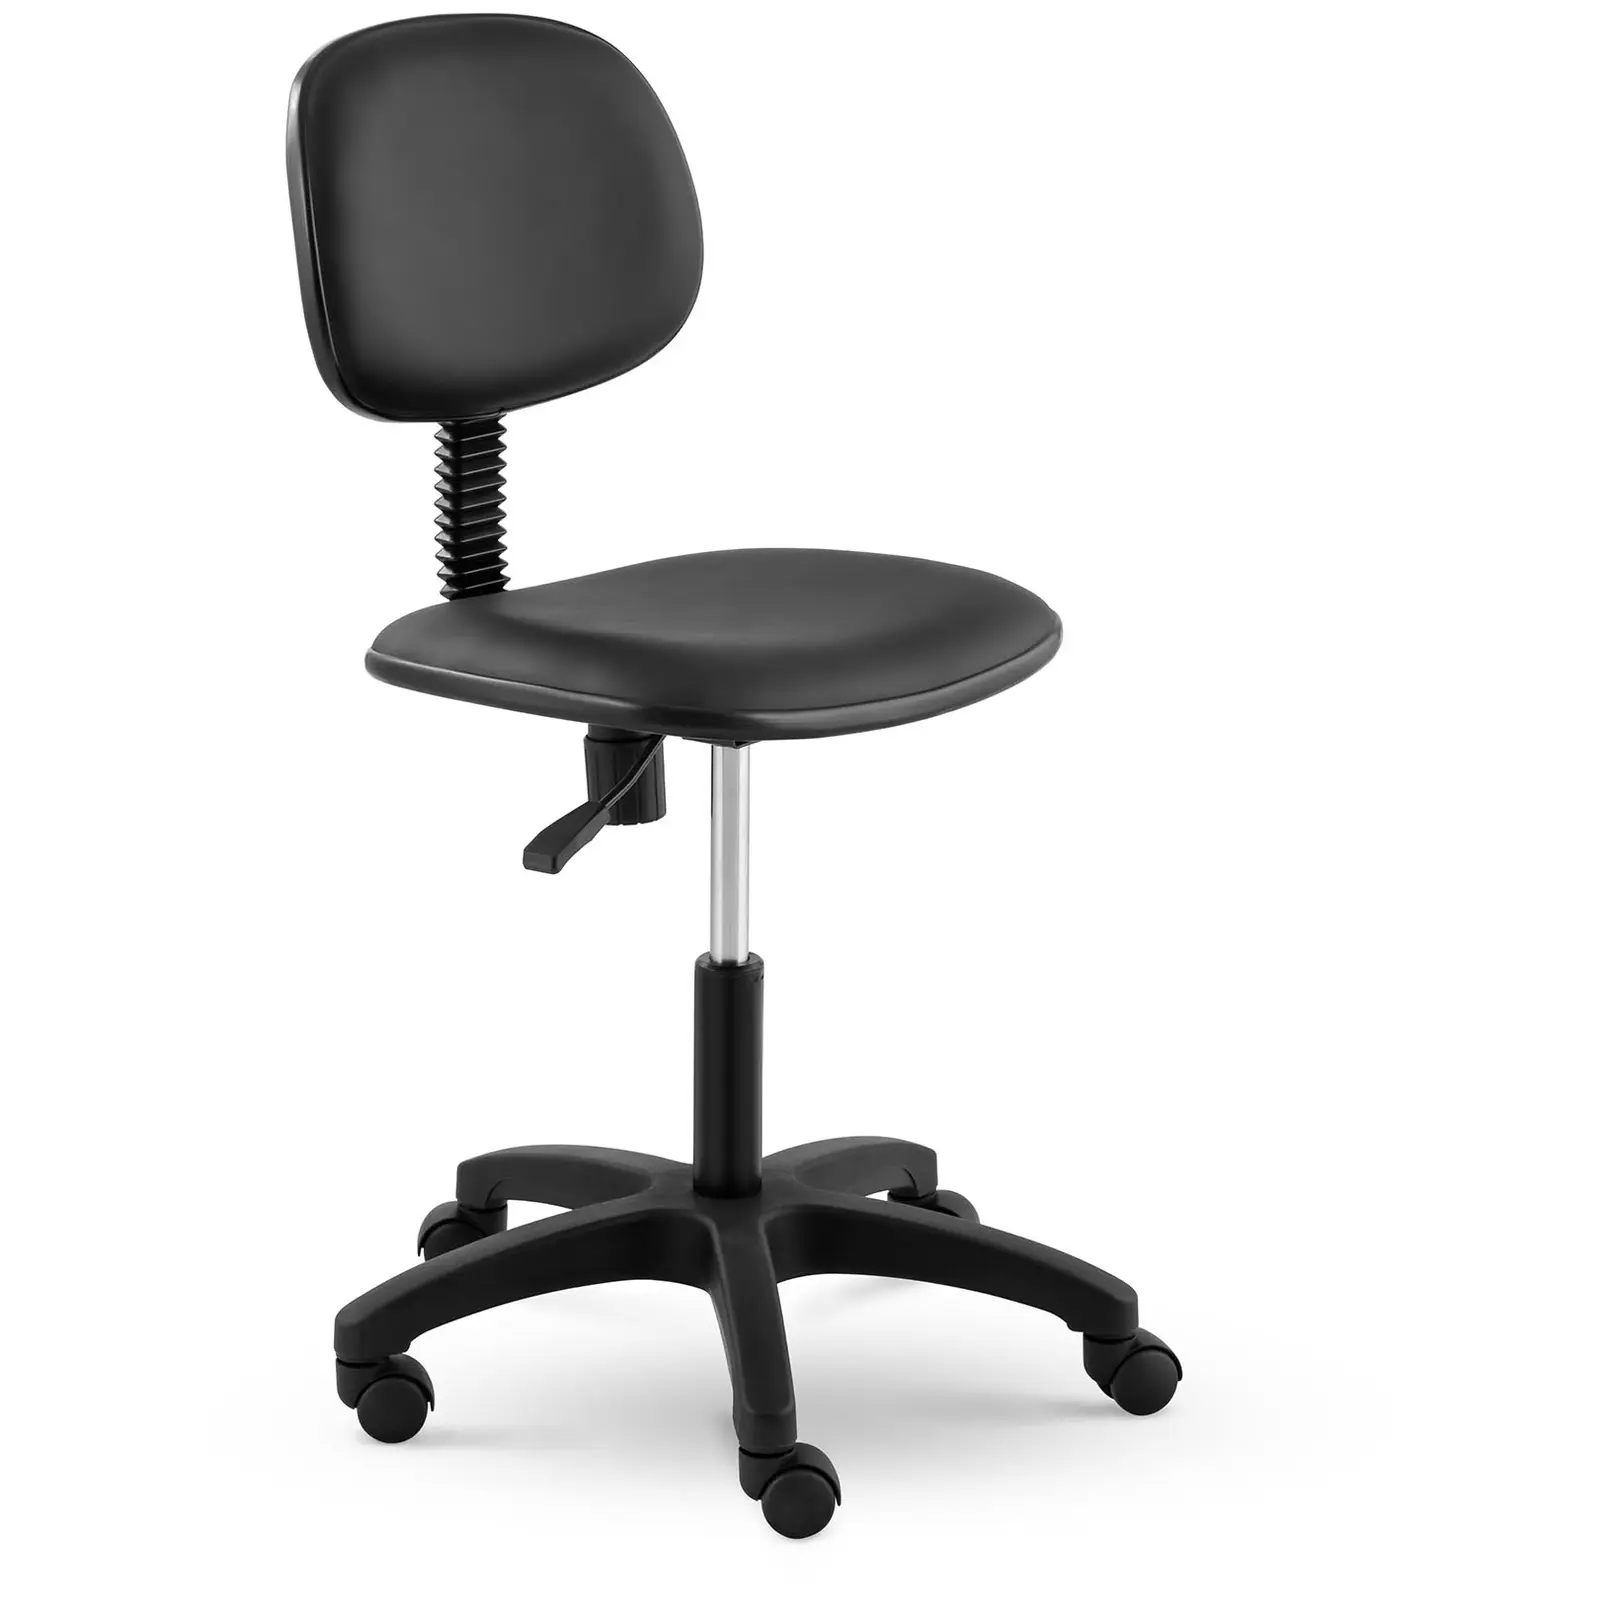 Cadeira para costura - 120 kg - em preto - altura 450 - 590 mm